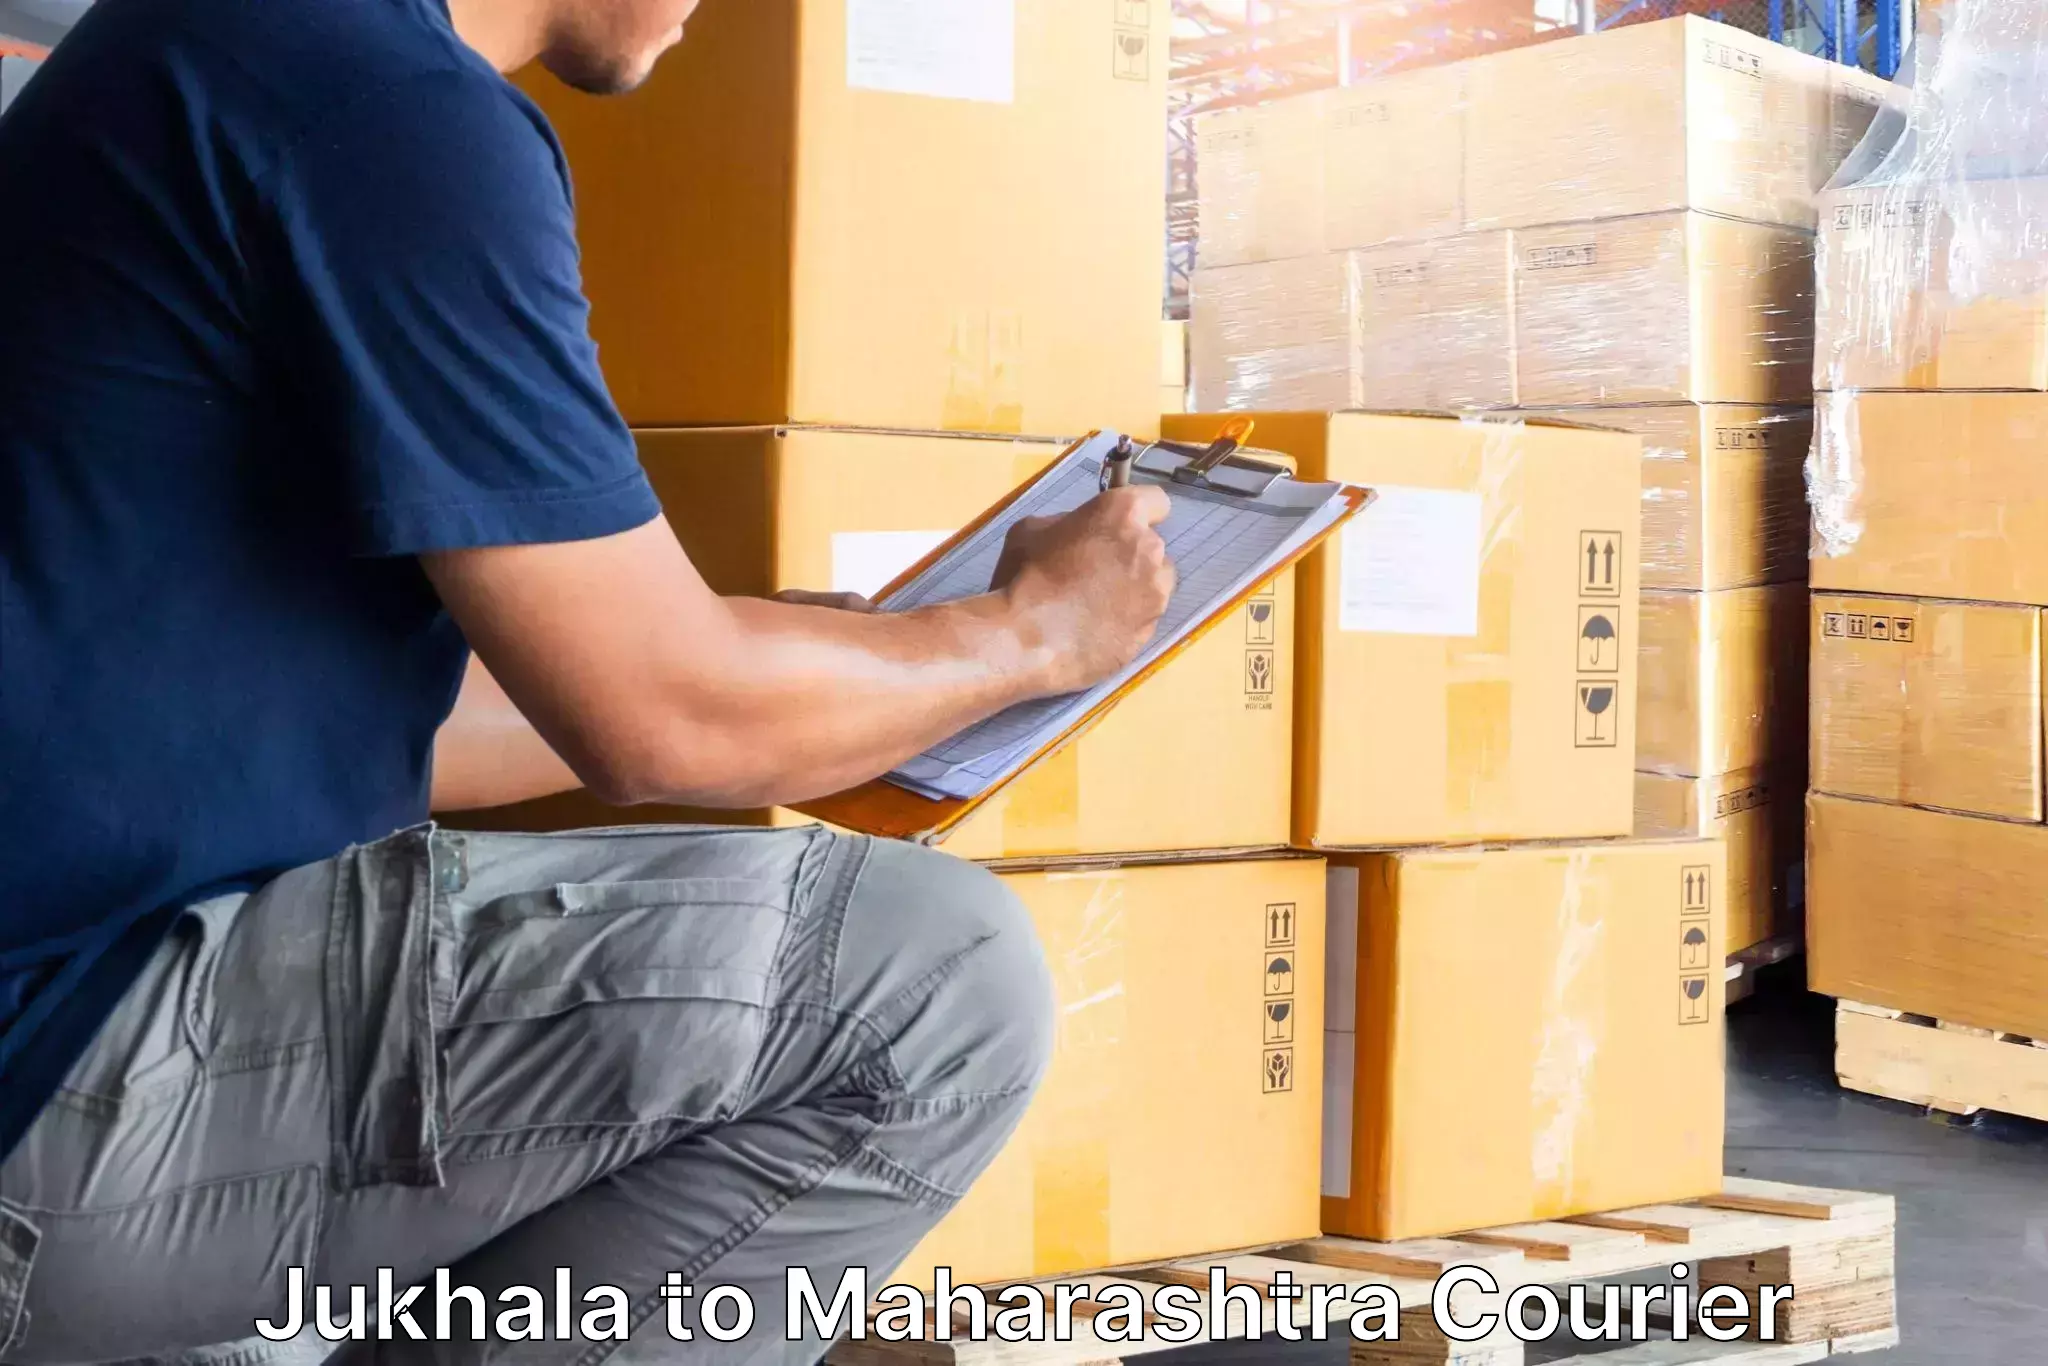 Moving and packing experts Jukhala to Pimpalgaon